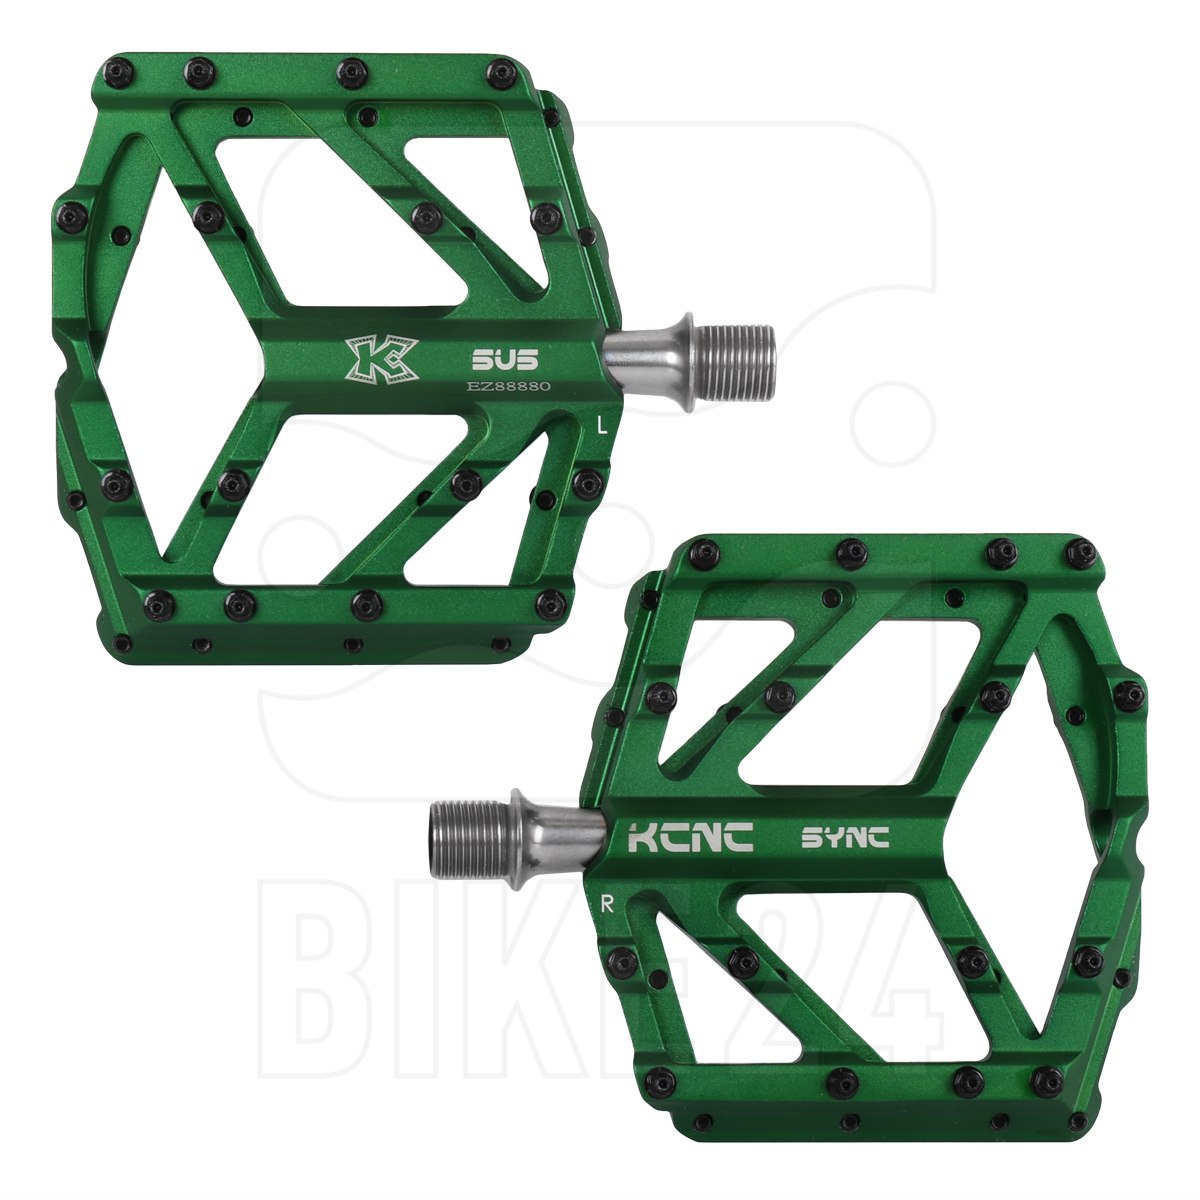 Productfoto van KCNC SYNC Platform Pedals - green